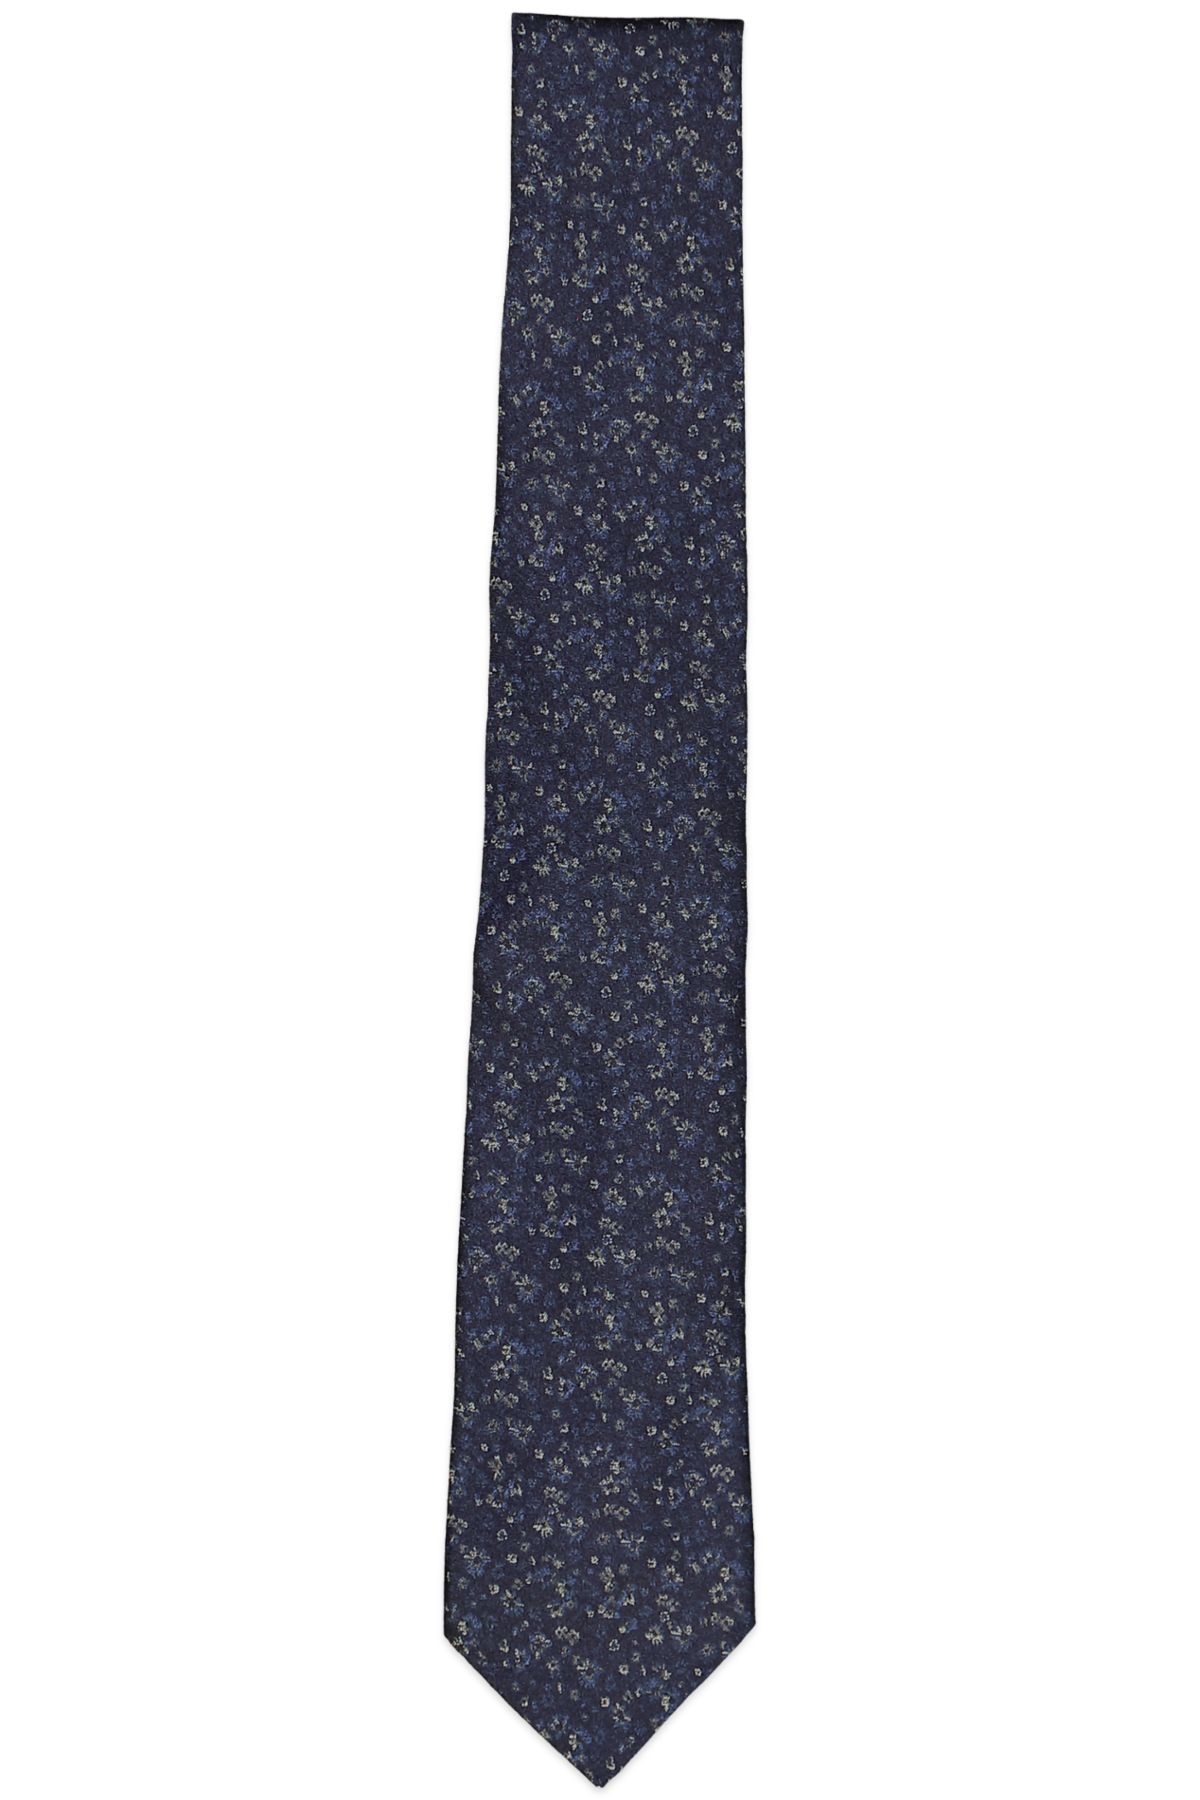 John Varvatos Star Usa Filmore Multi-flower Silk Classic Tie Blue